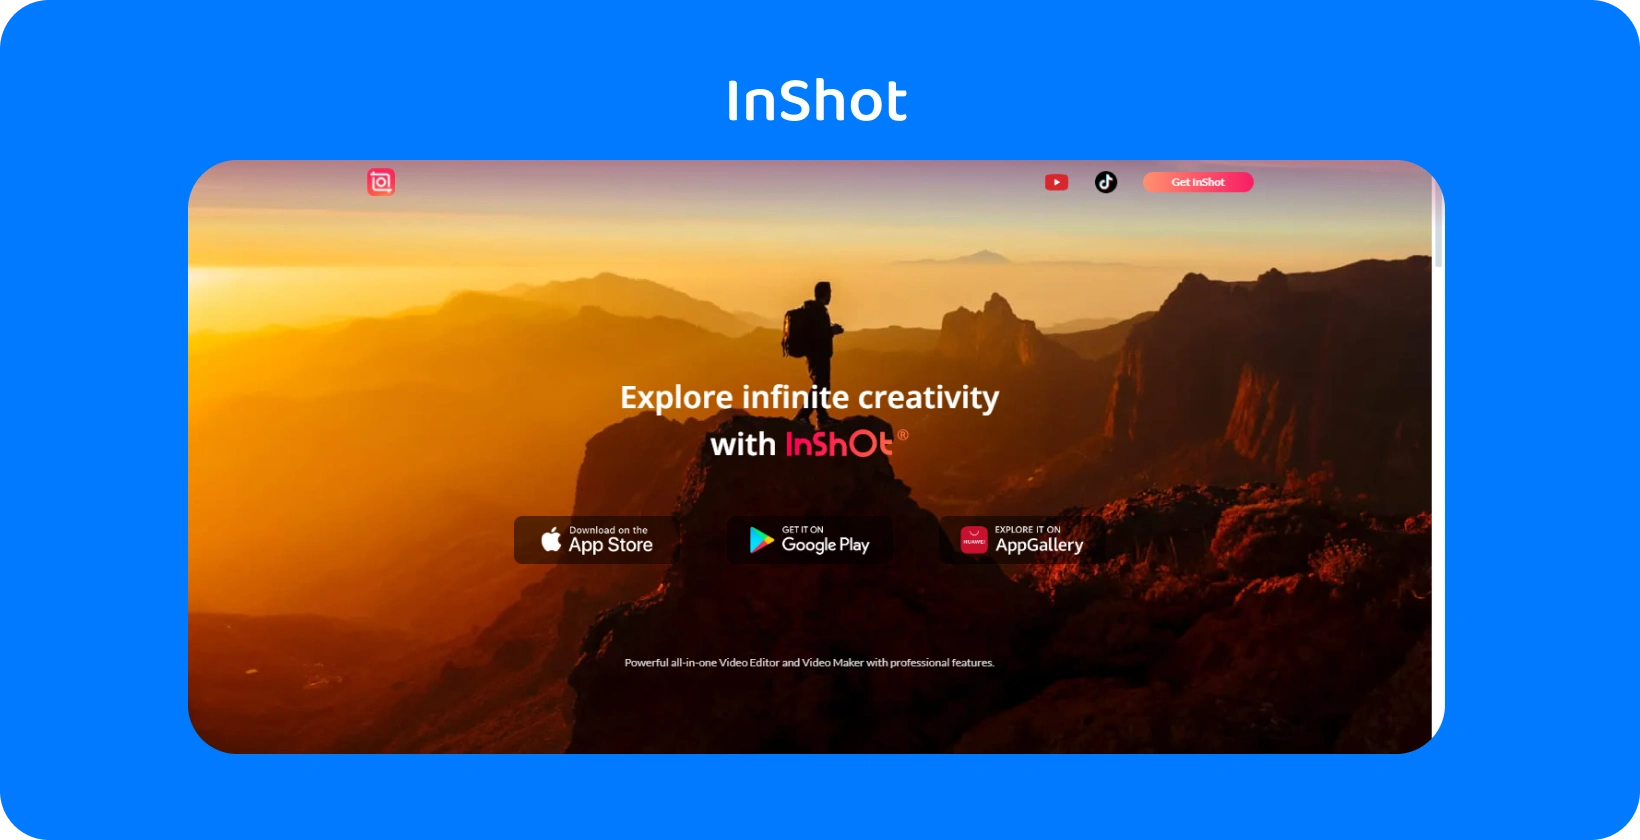 InShot рекламата на апликацијата со планинар на зајдисонце, симболизирајќи го ветувањето на апликацијата за истражување на бесконечната креативност во уредувањето на видеото.
